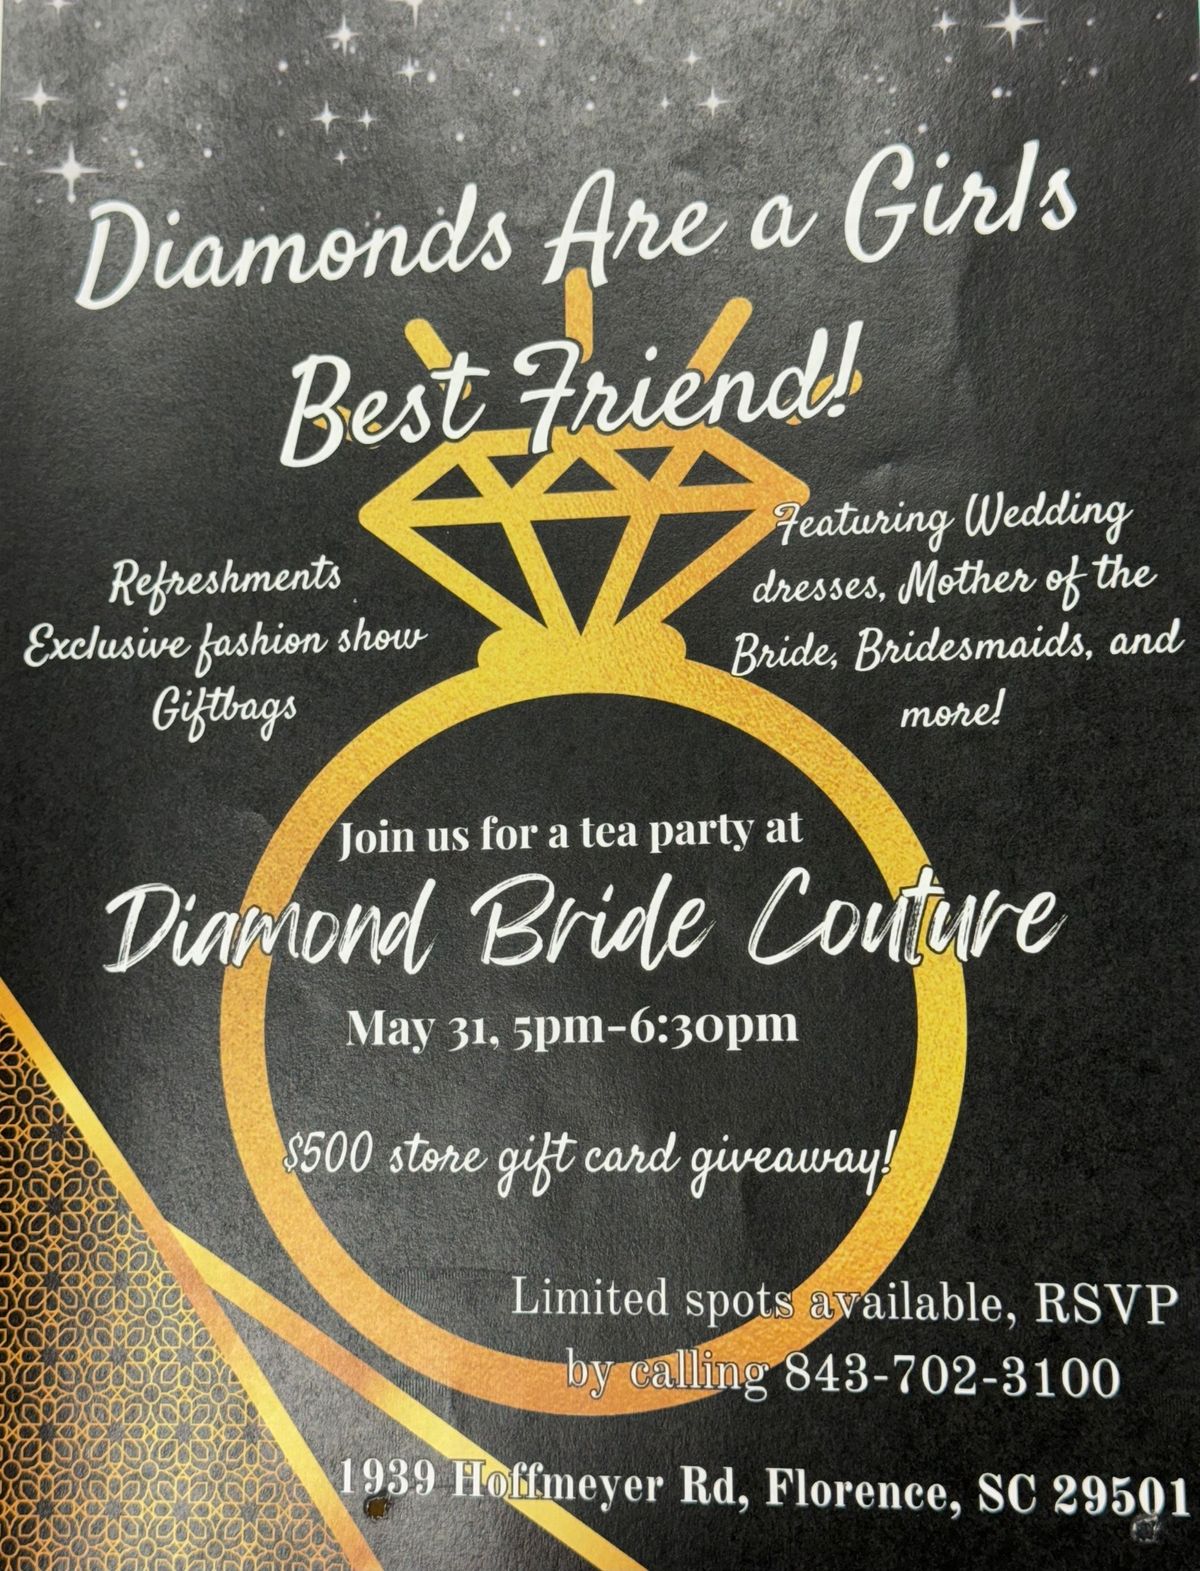 Diamond bride couture tea party \u201cDiamonds are a girl\u2019s best friend\u201d